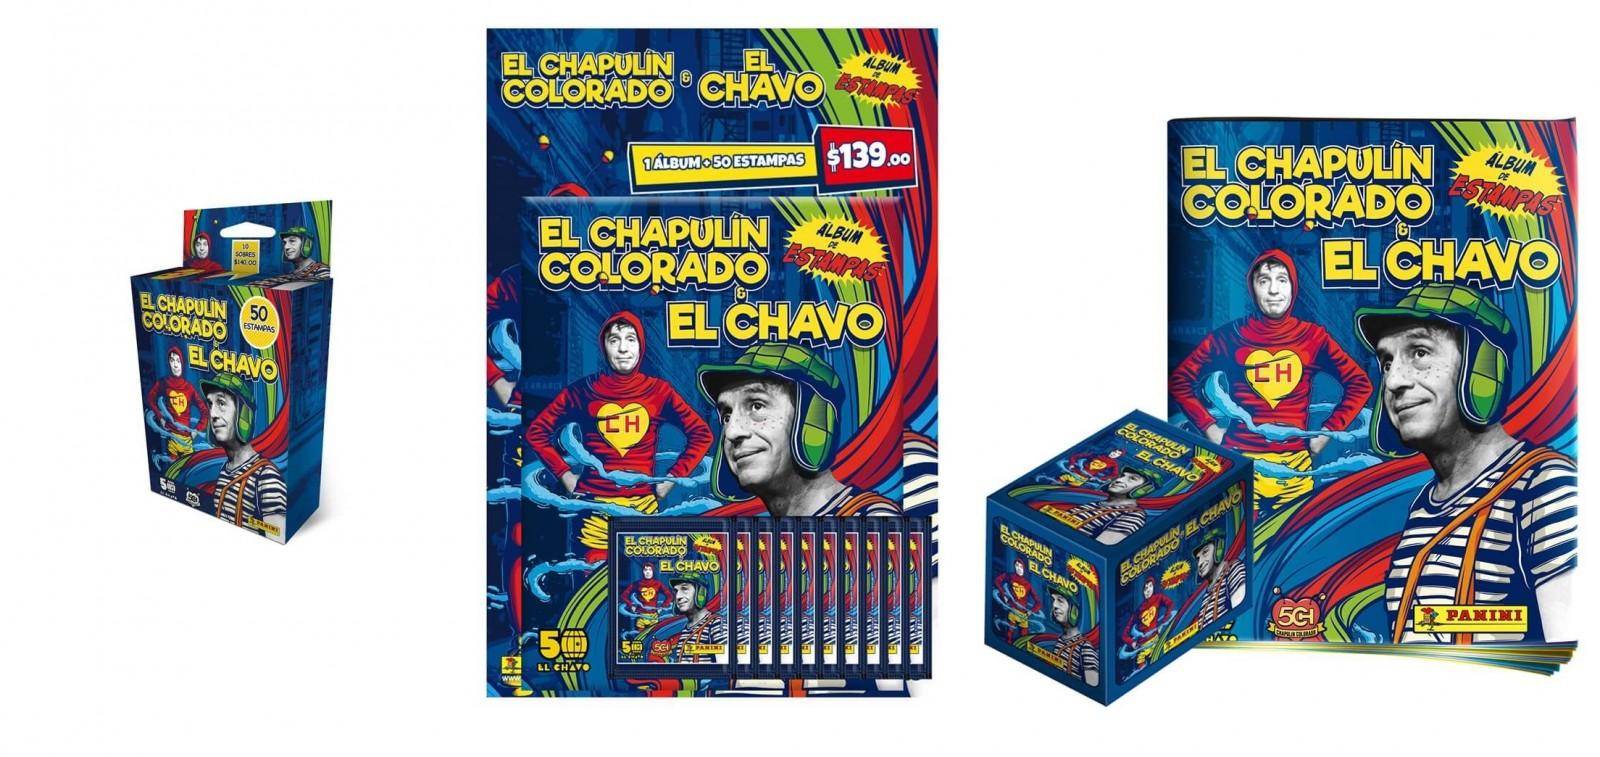 ¡No contaban con su astucia! Panini presenta álbum edición 50 Años de El Chapulín Colorado y El Chavo 2